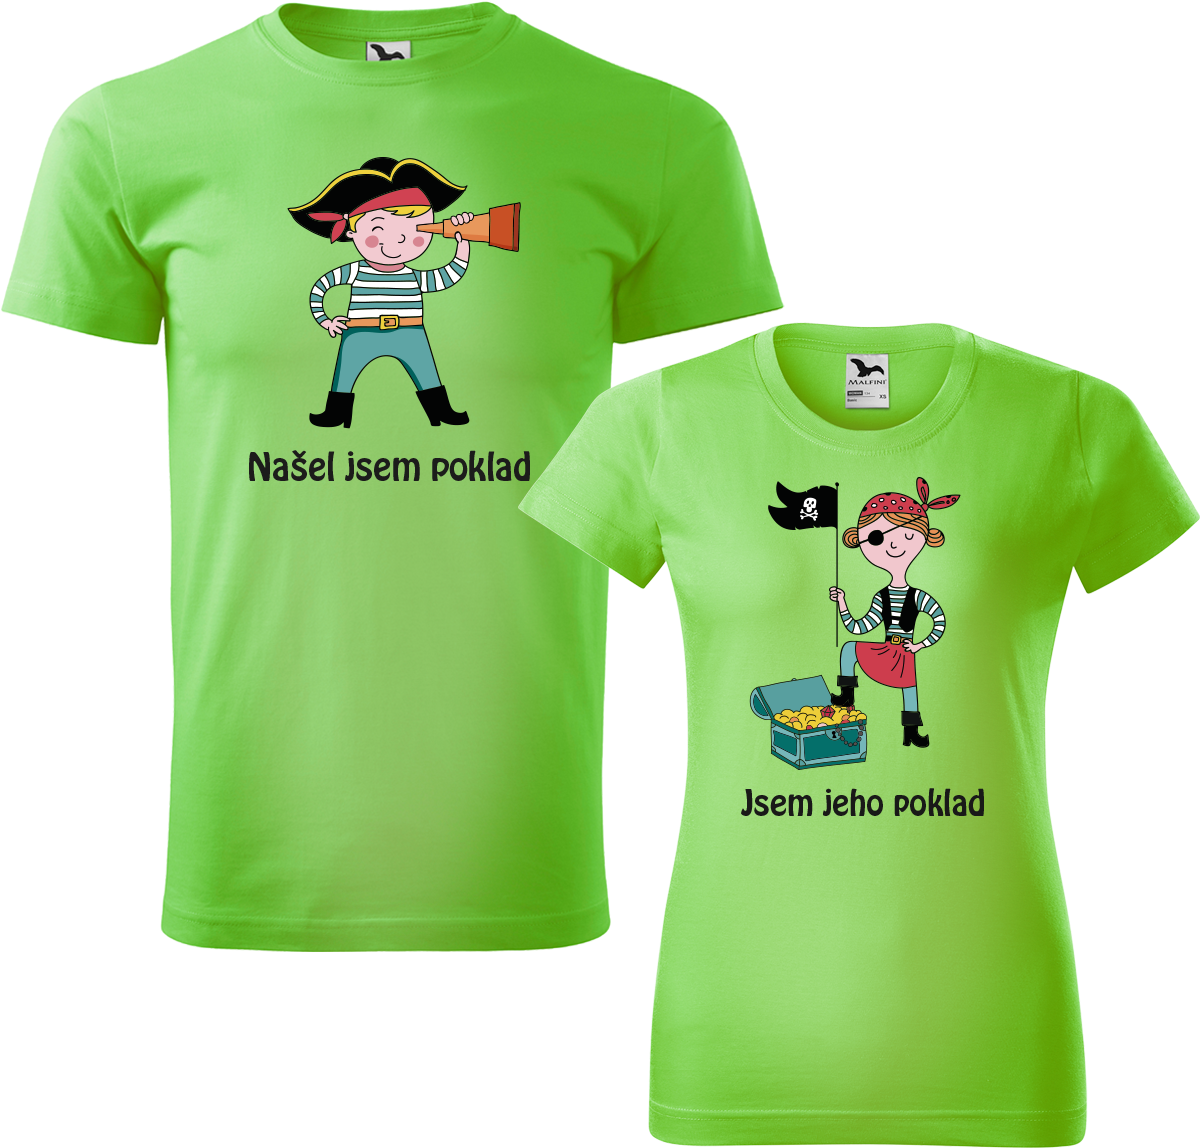 Trička pro páry - Poklad Barva: Apple Green (92), Velikost dámské tričko: S, Velikost pánské tričko: XL